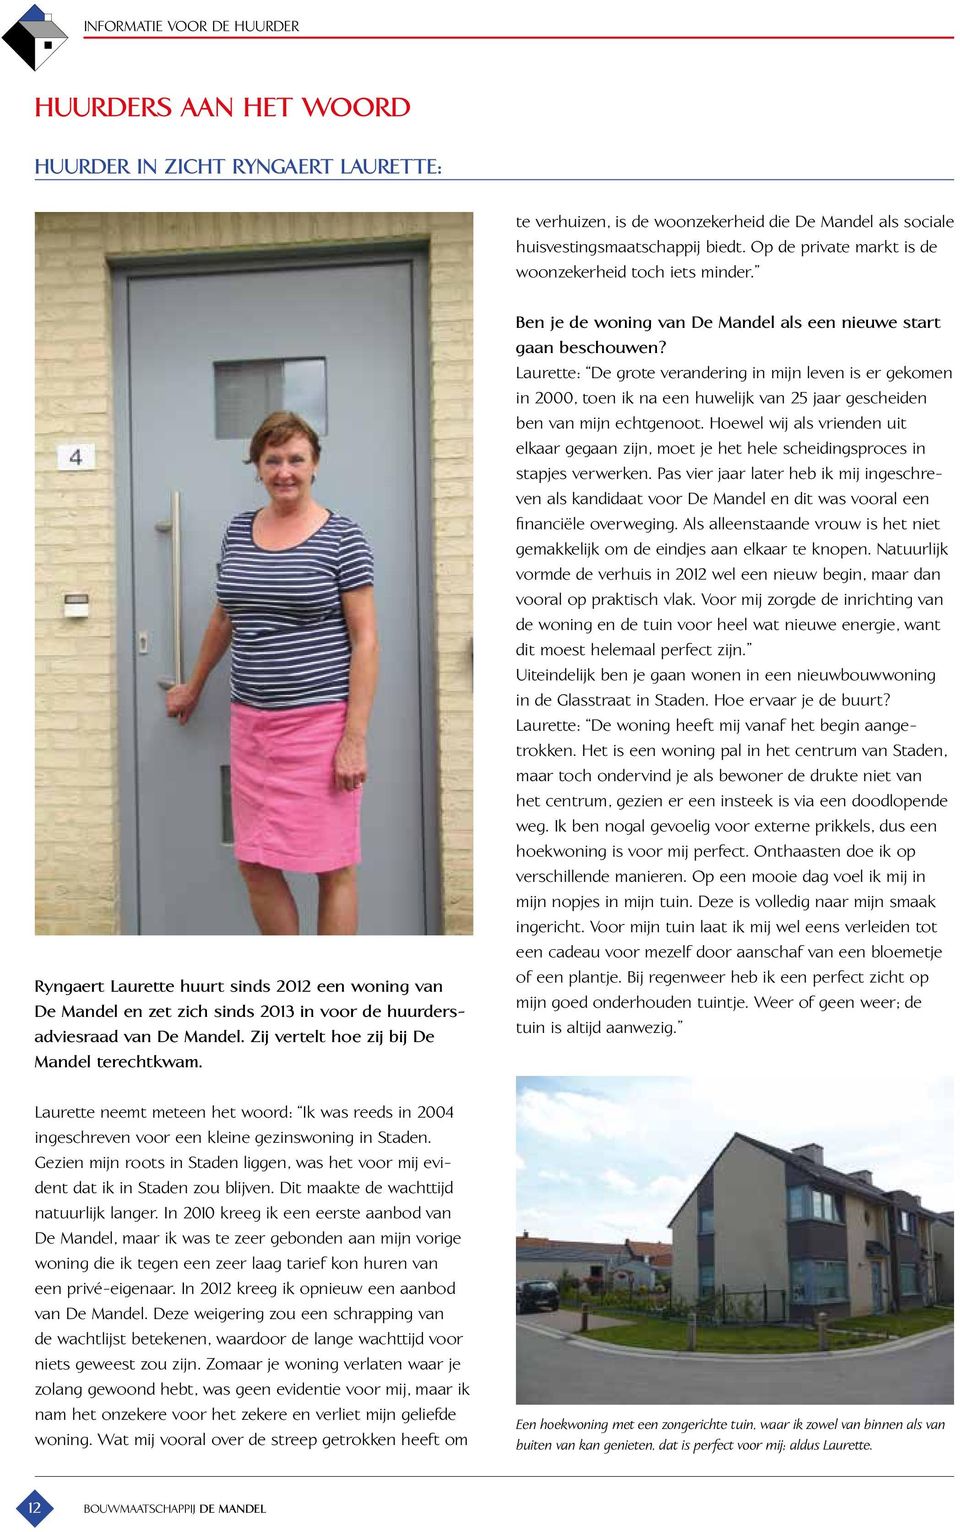 Zij vertelt hoe zij bij De Mandel terechtkwam. Laurette neemt meteen het woord: Ik was reeds in 2004 ingeschreven voor een kleine gezinswoning in Staden.